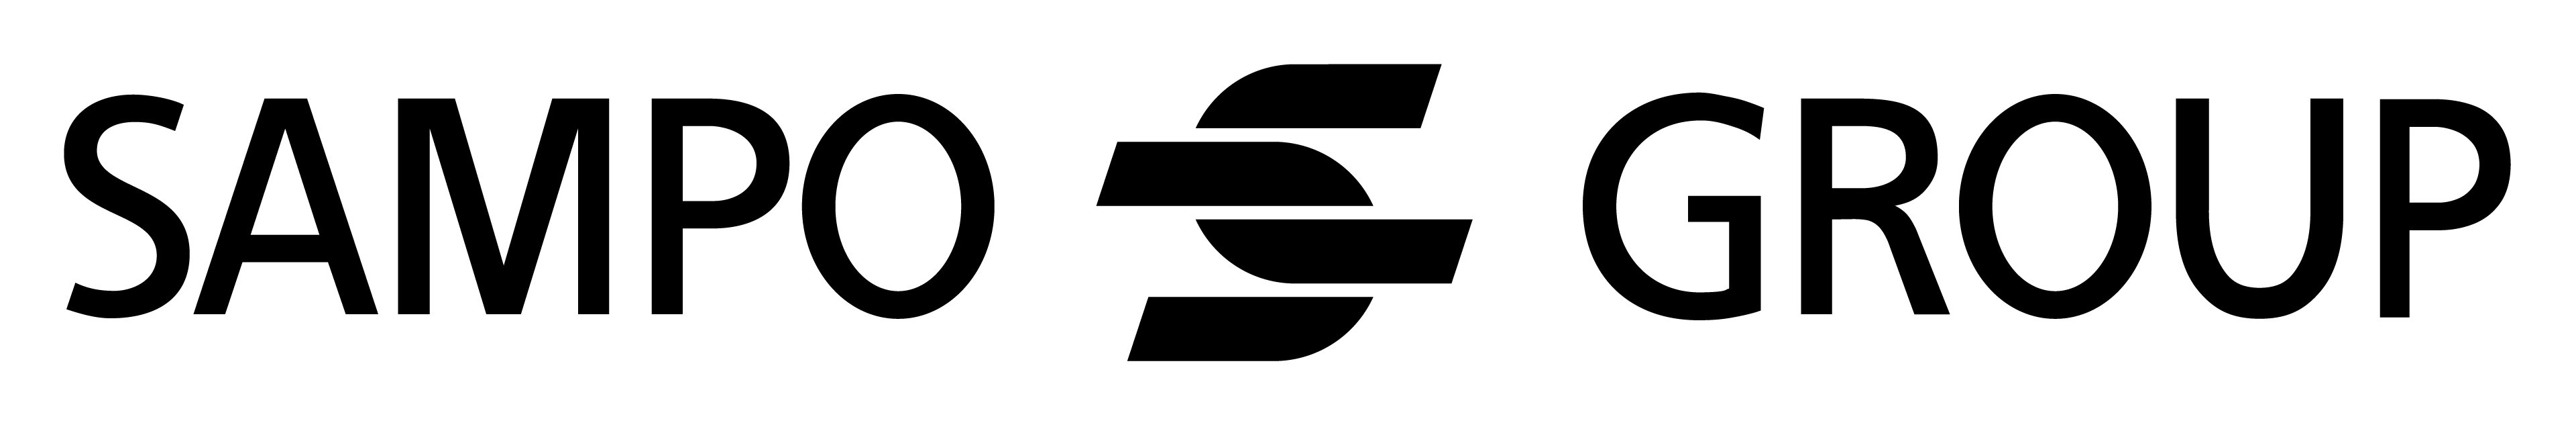 Sampo Group -logo